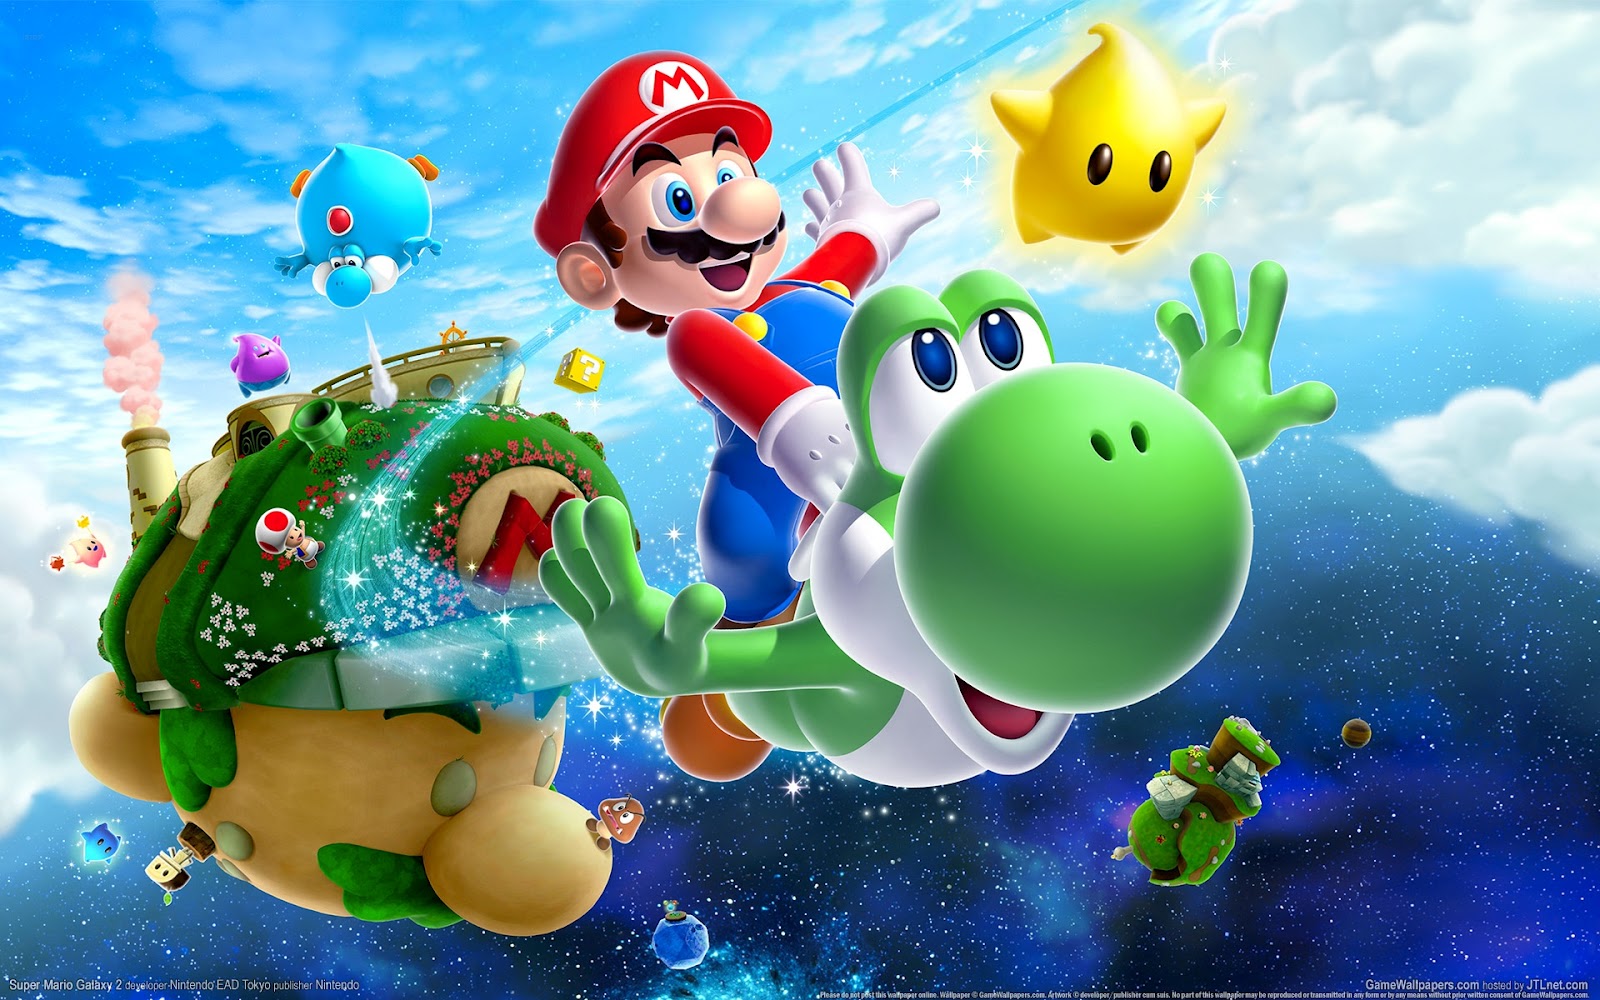 Nintendo’s animated Super Mario Bros. movie is delayed until next spring